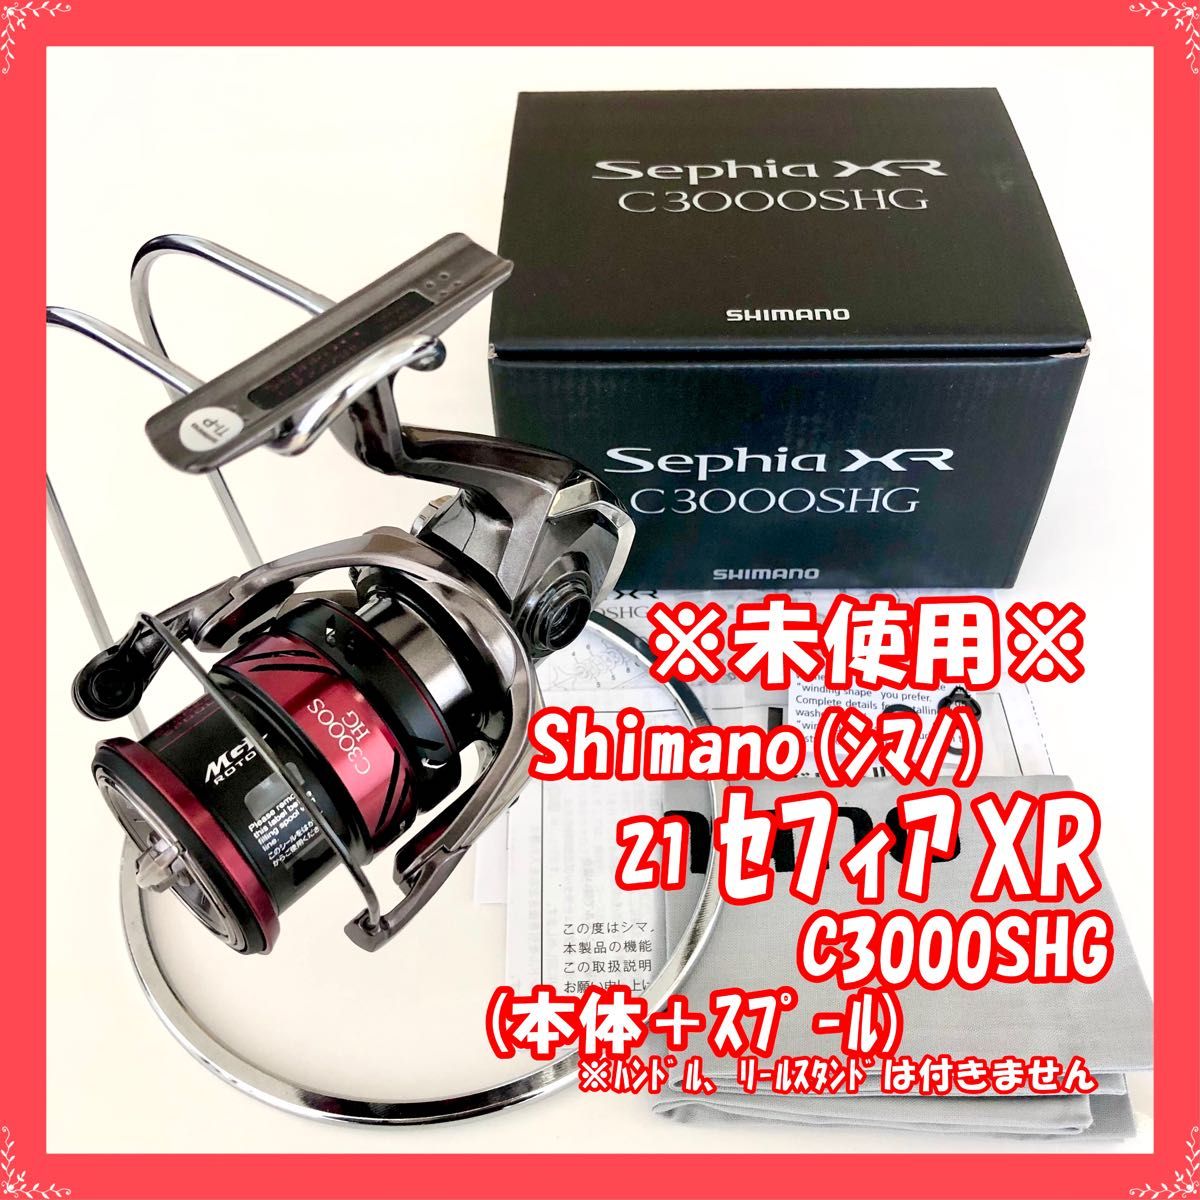 特別プライス シマノ(SHIMANO) スピニングリール 21 セフィア XR C3000SHG エギング 通販